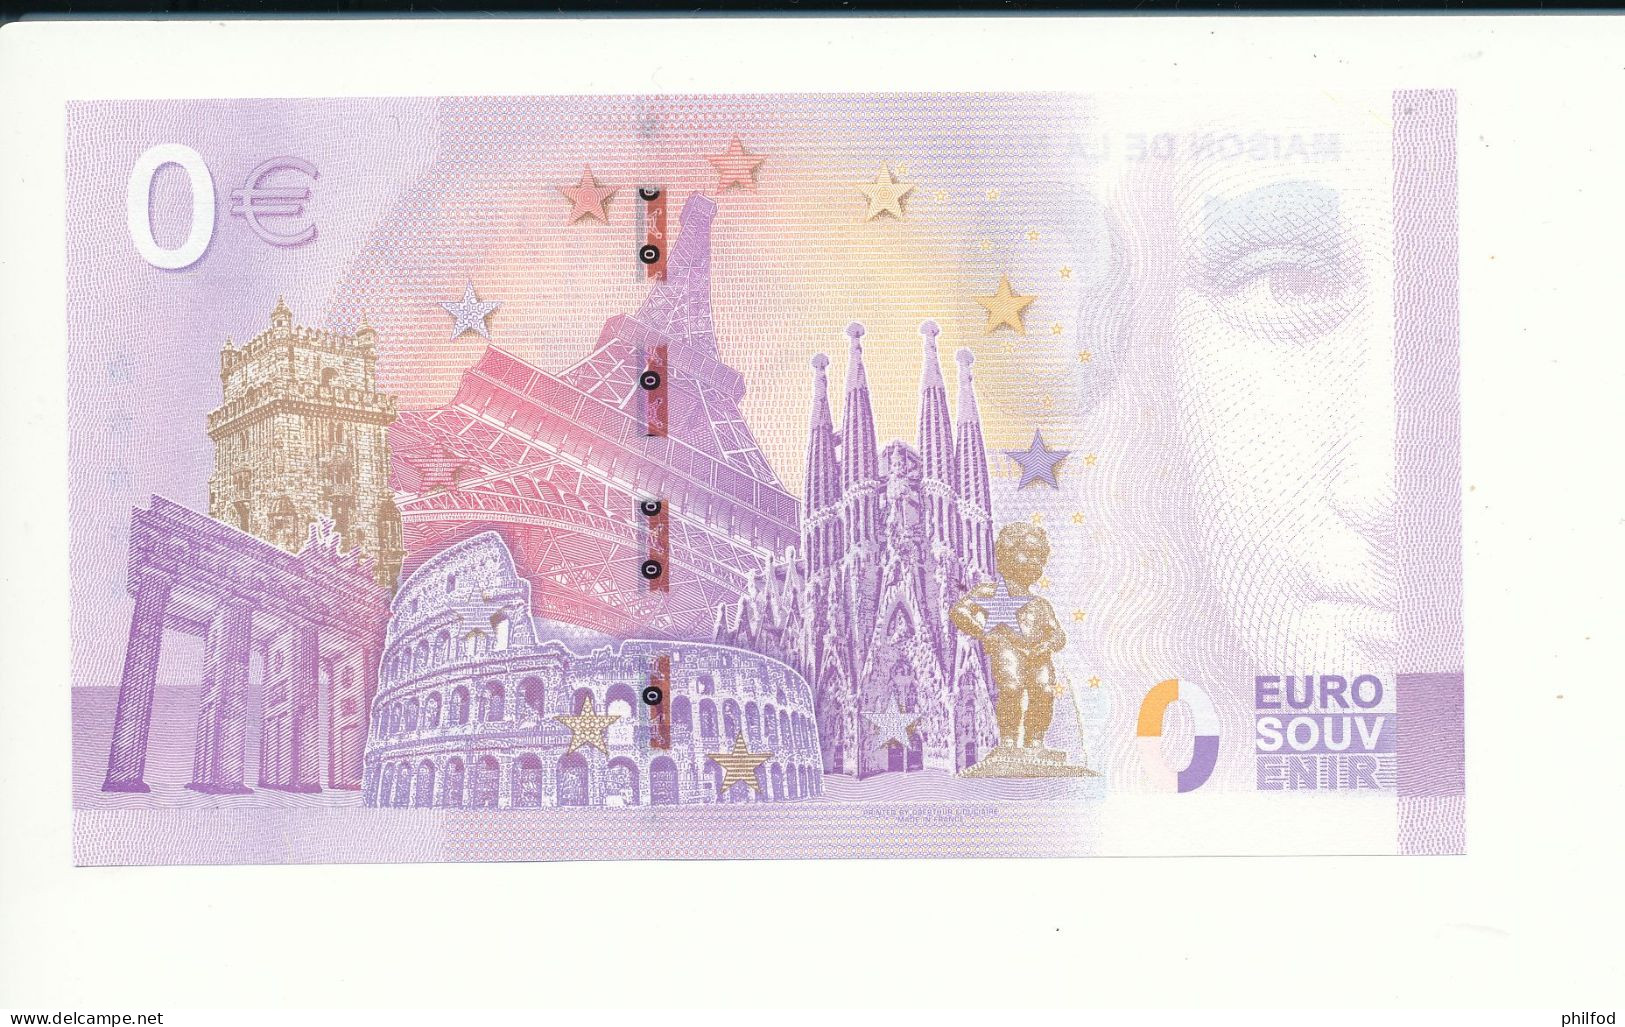 Billet Souvenir - 0 Euro - MAISON DE LA MAGIE ROBERT-HOUDIN - UEGM - 2023-2 - N° 1243 - Kilowaar - Bankbiljetten